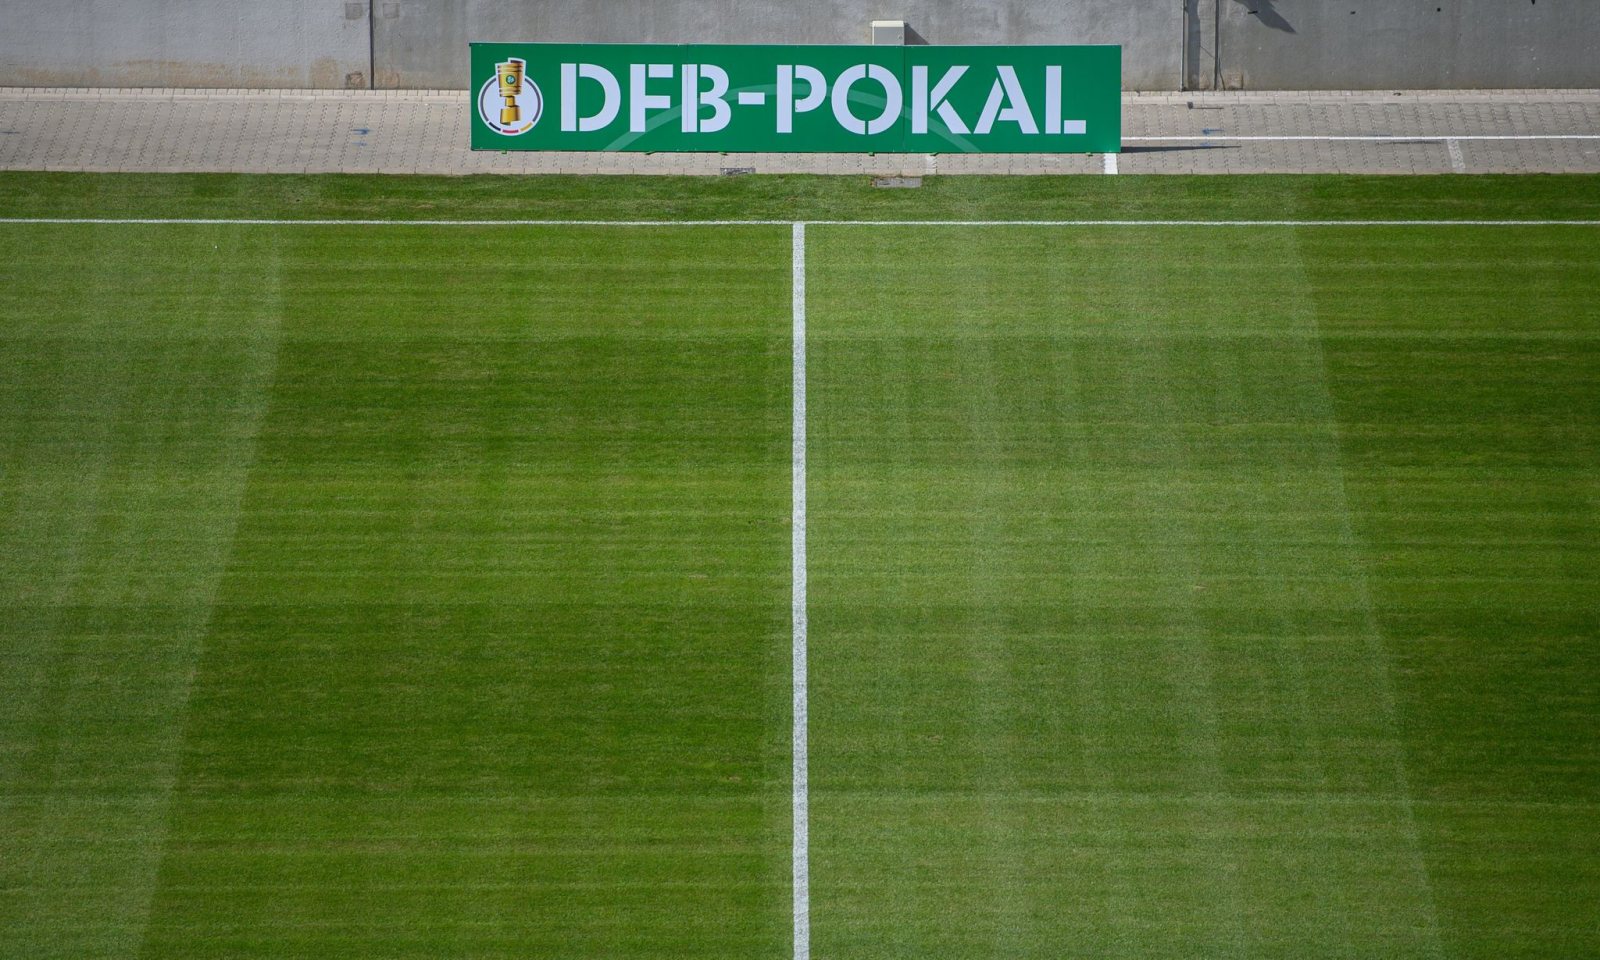 Eine Bande mit der Aufschrift DFB-Pokal steht am Spielfeld.